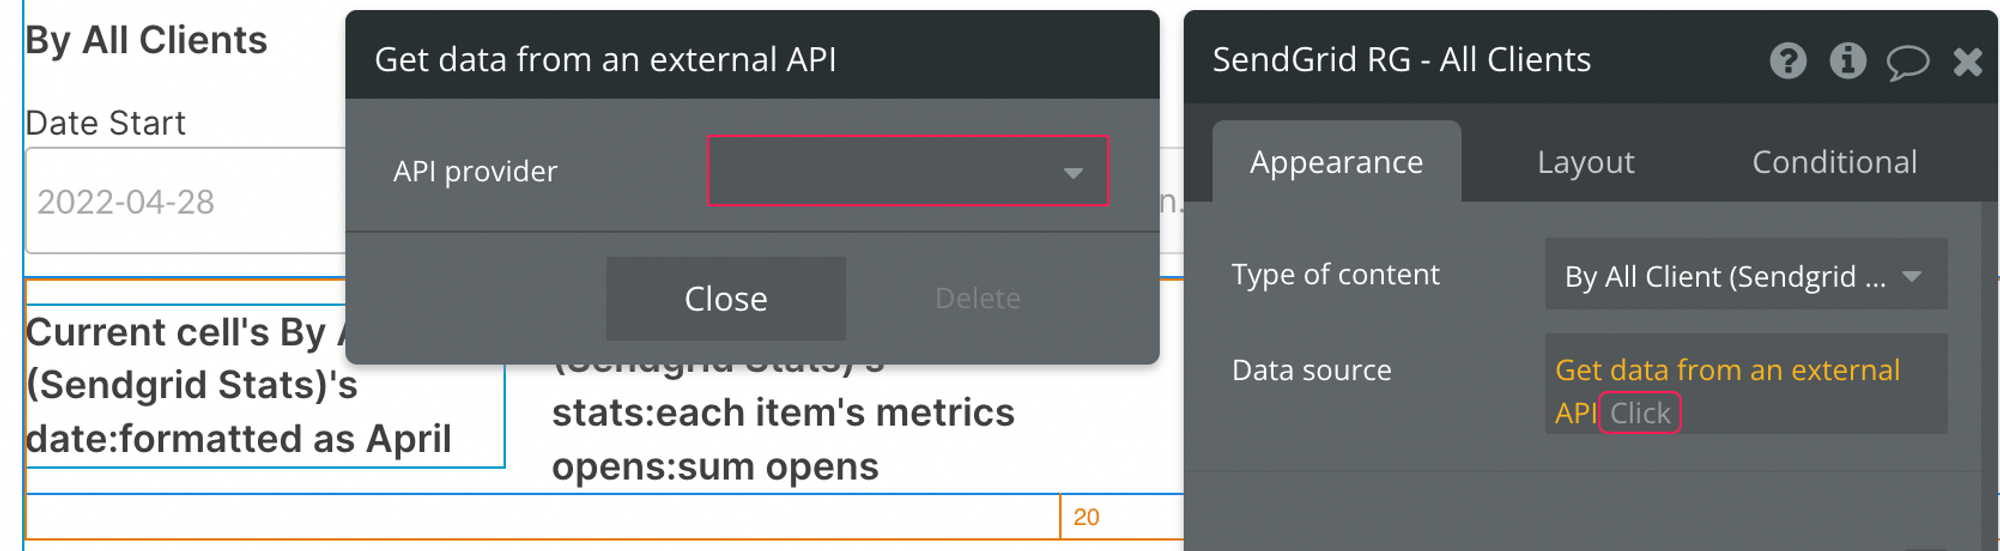 Get data from an external API